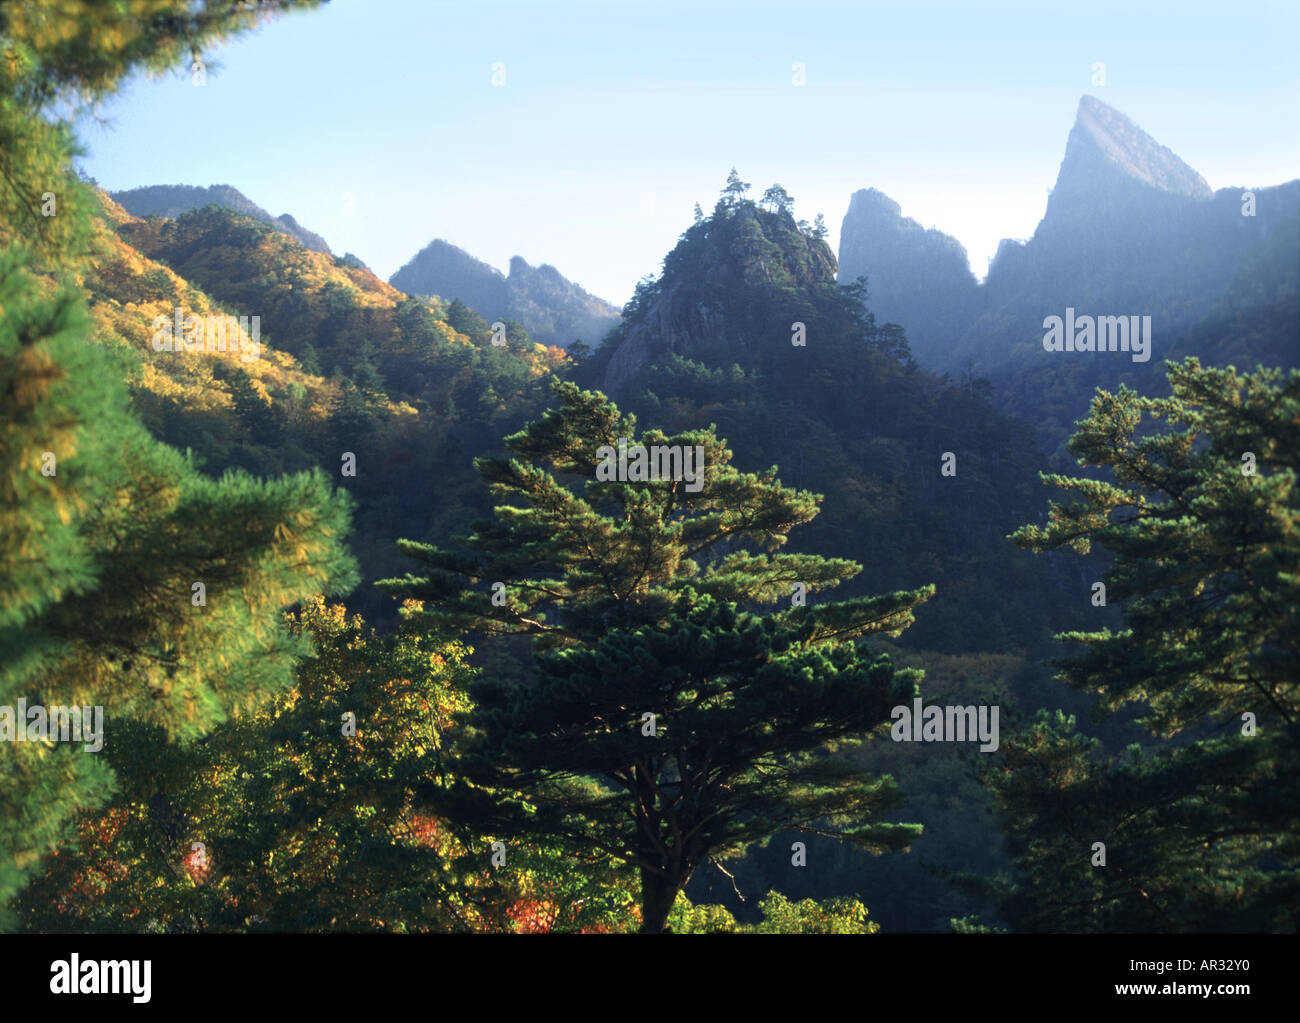 Soraksan Mountains in Autumn, Soraksan, South Korea, Asia Stock Photo